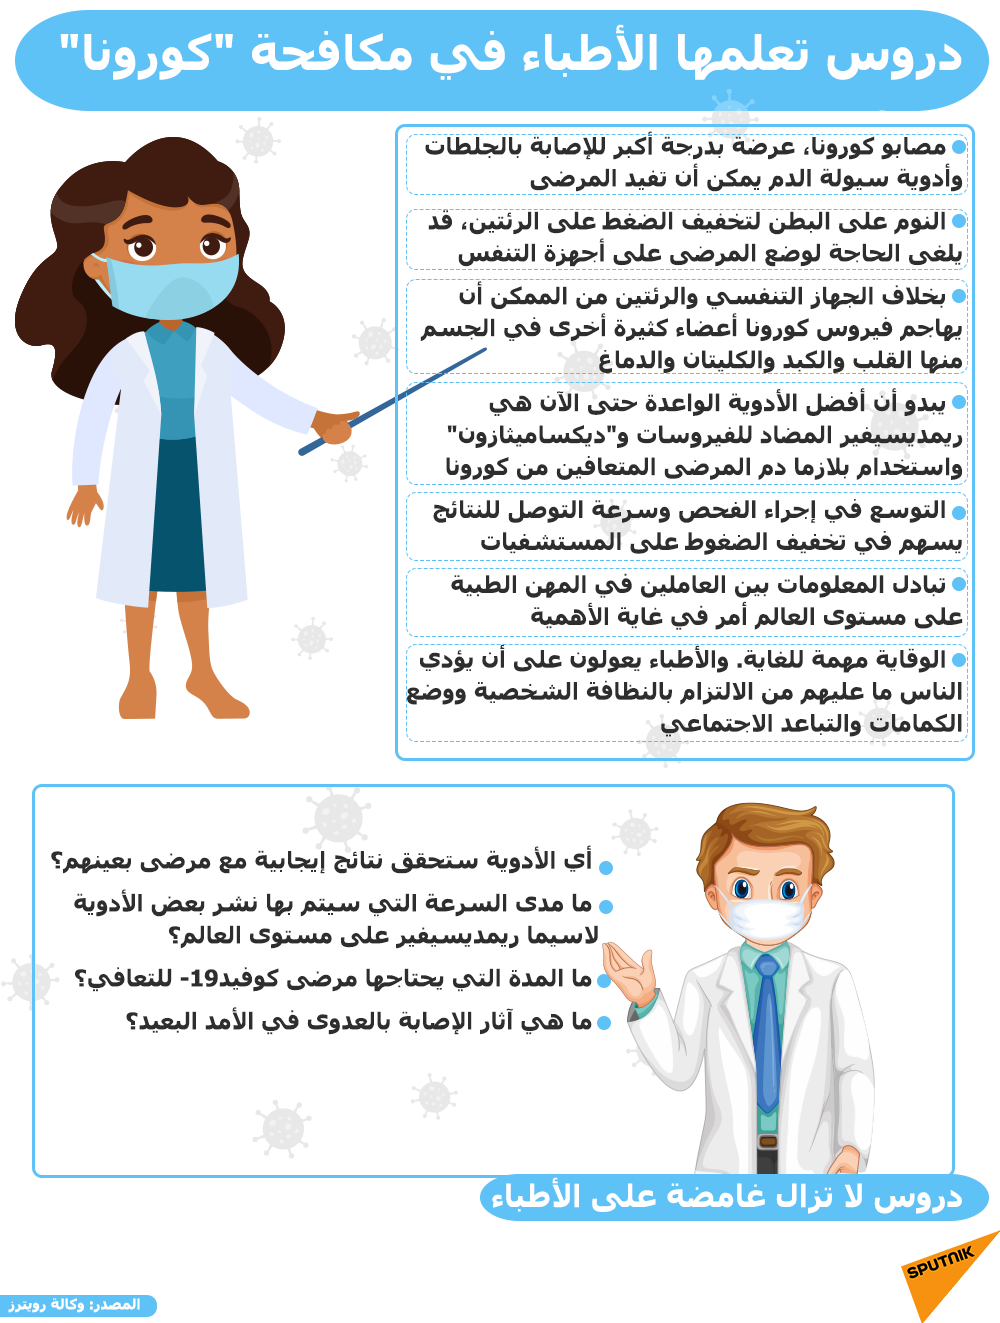 دروس تعلمها الأطباء في مكافحة كورونا - سبوتنيك عربي